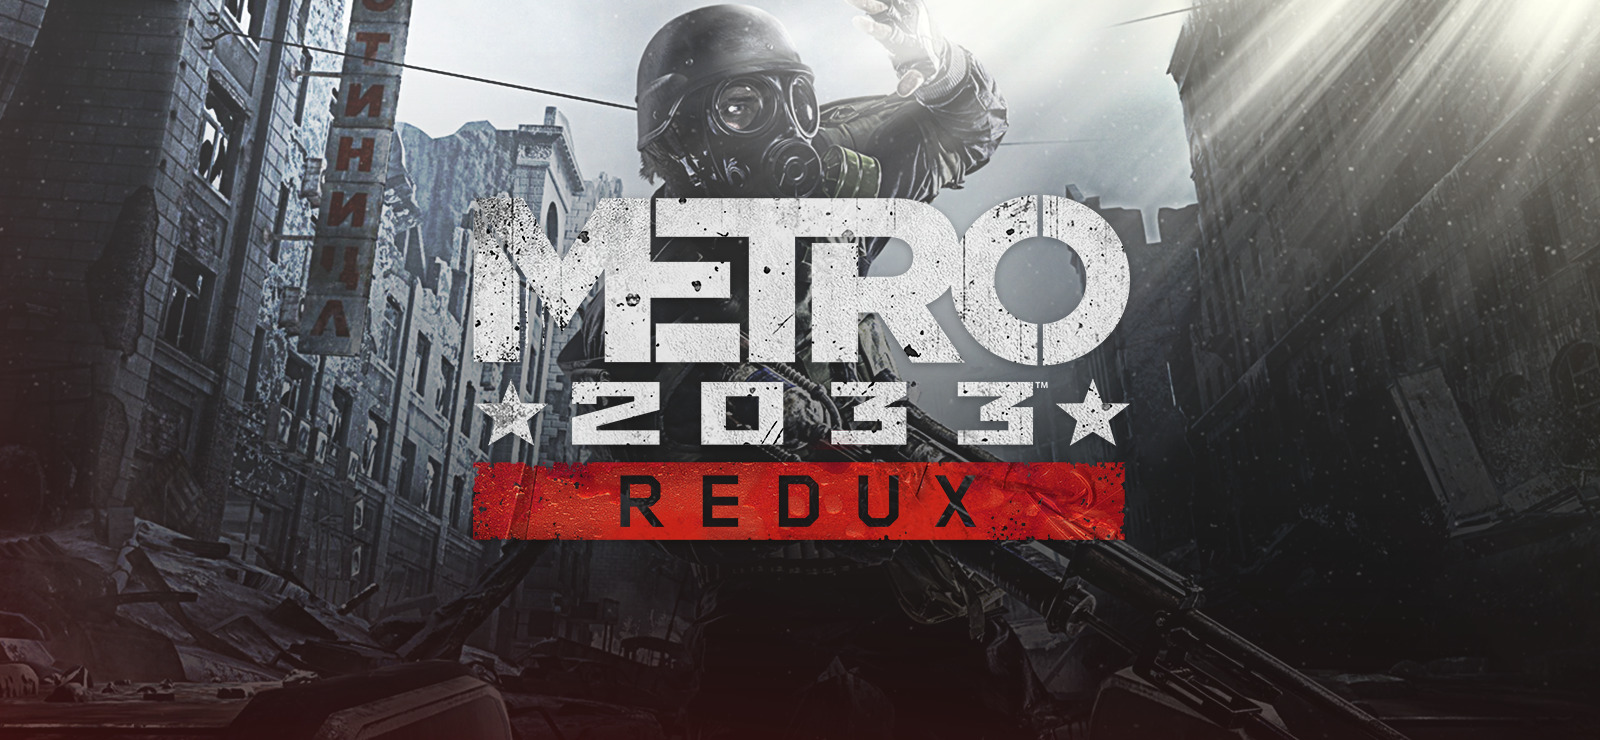 Metro 2033 Redux on GOG.com